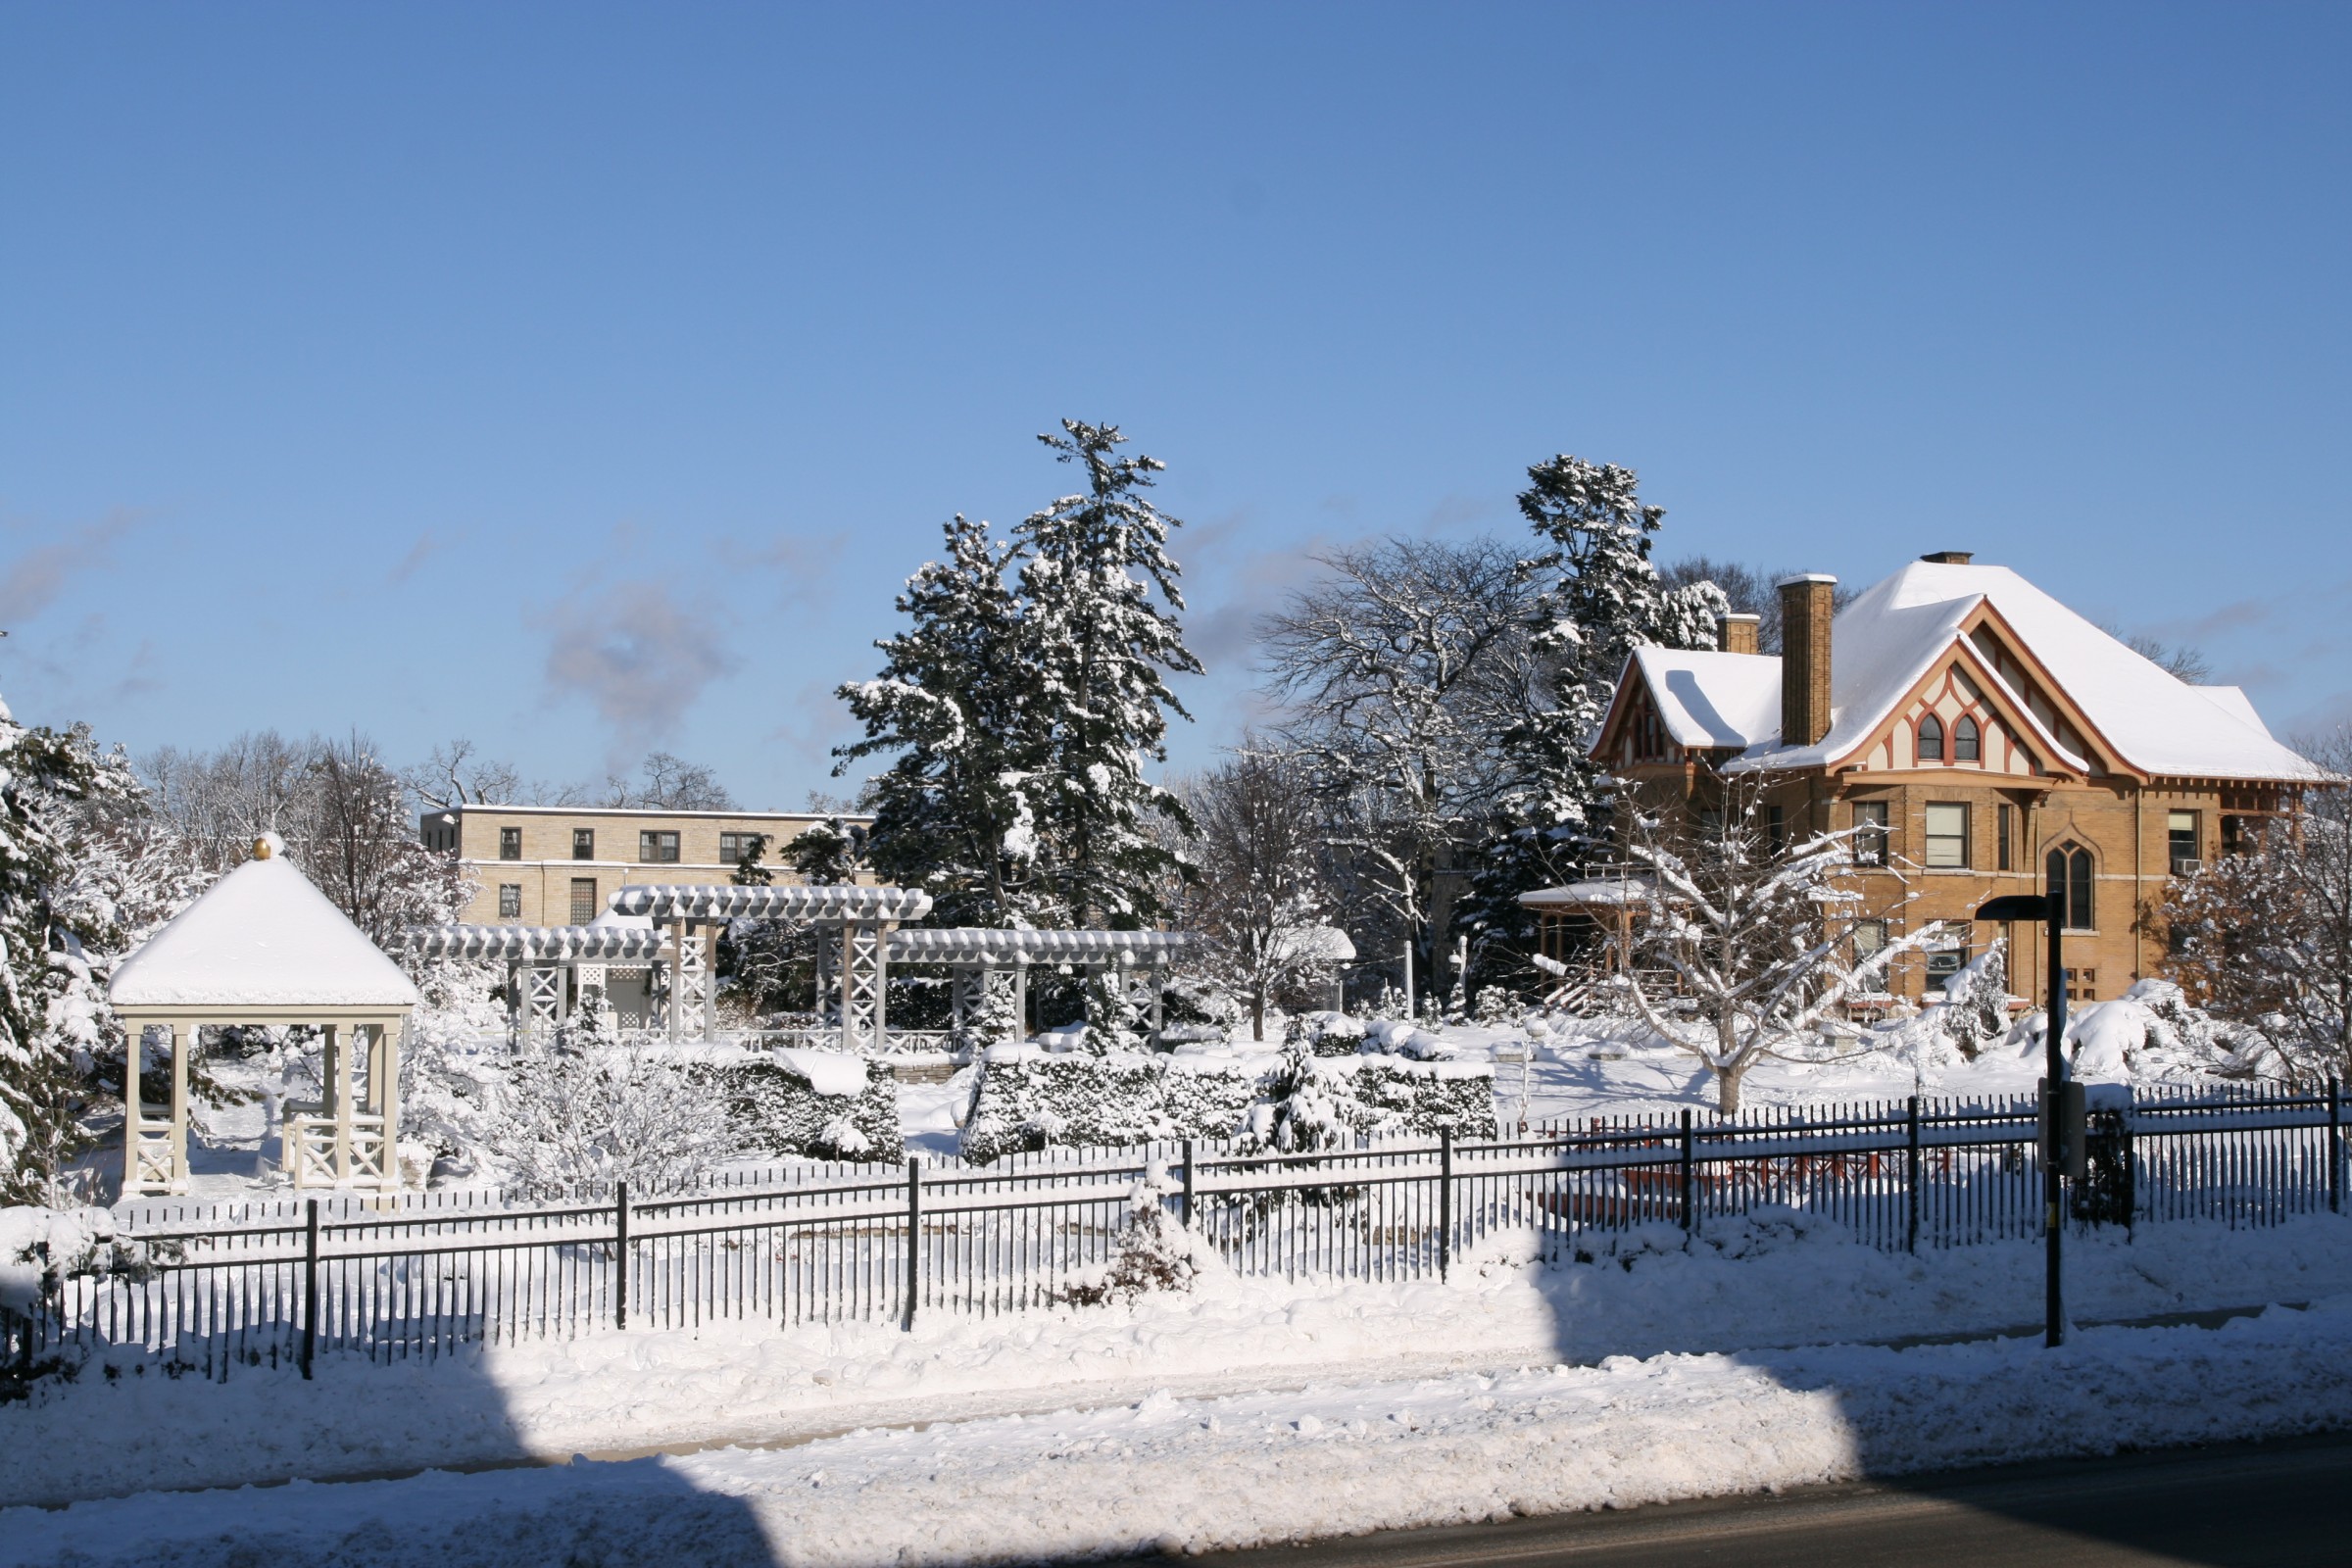 Allen Centennial Gardens in Winter